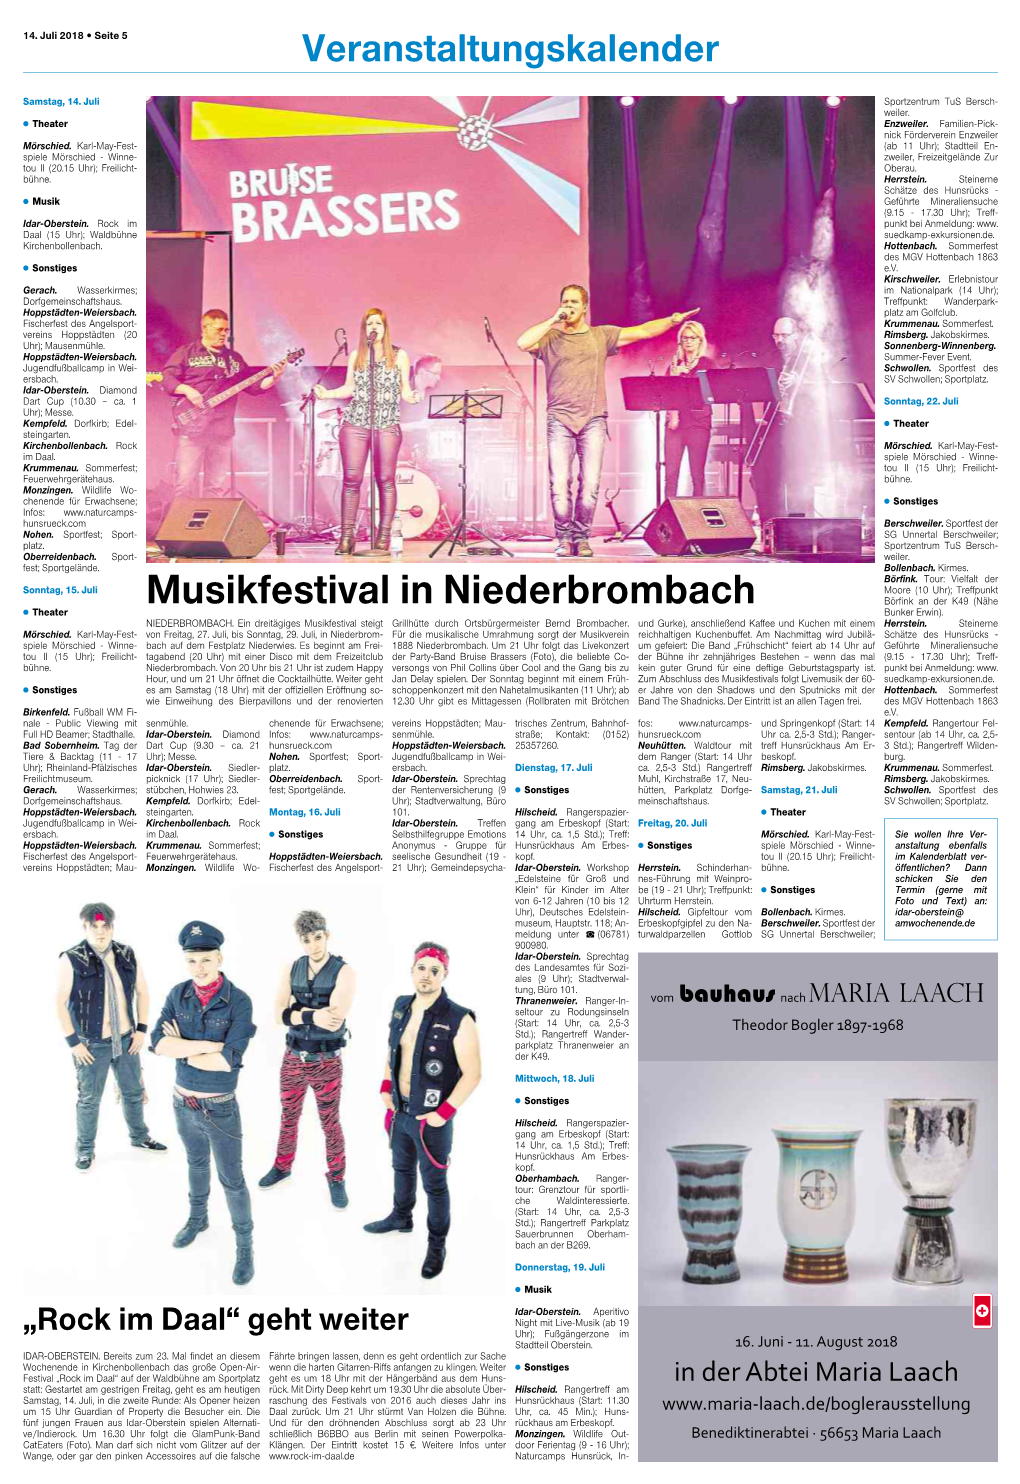 Musikfestival in Niederbrombach Börfink an Der K49 (Nähe ¸ Theater Bunker Erwin)